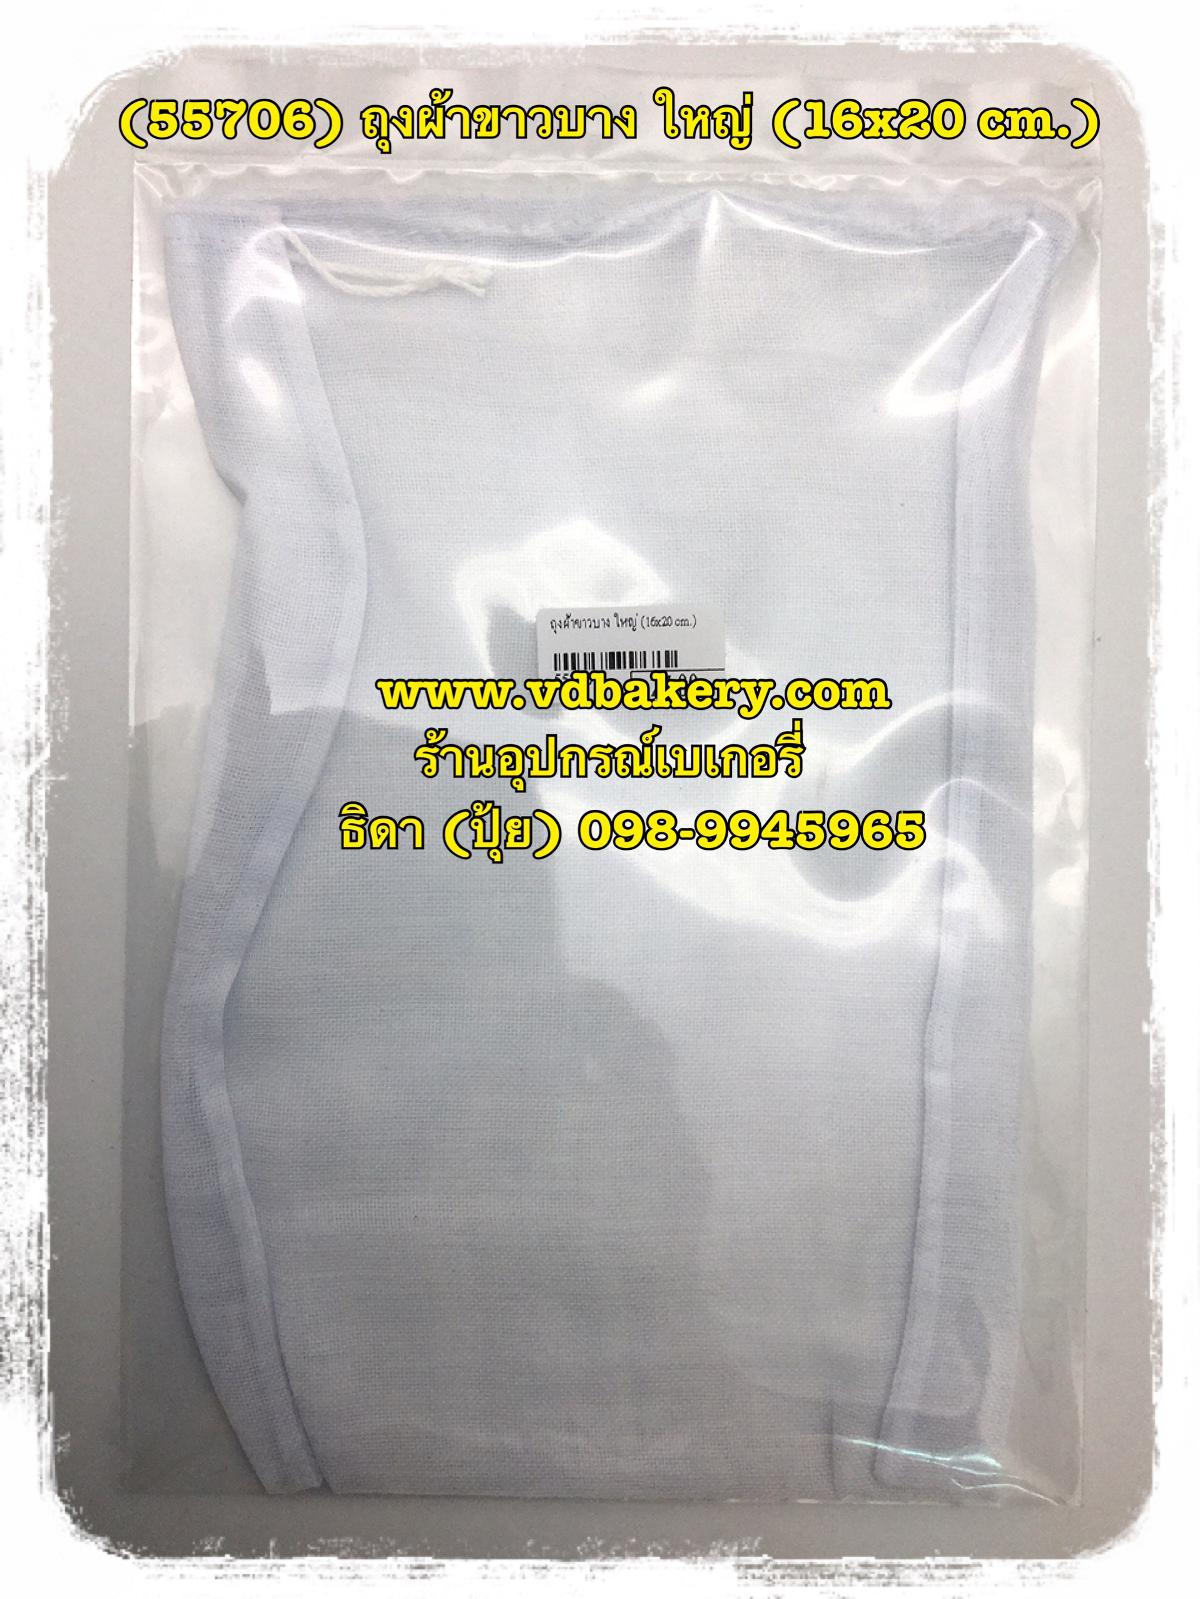 (55706) ถุงผ้าขาวบาง ใหญ่ (16x20 cm.)